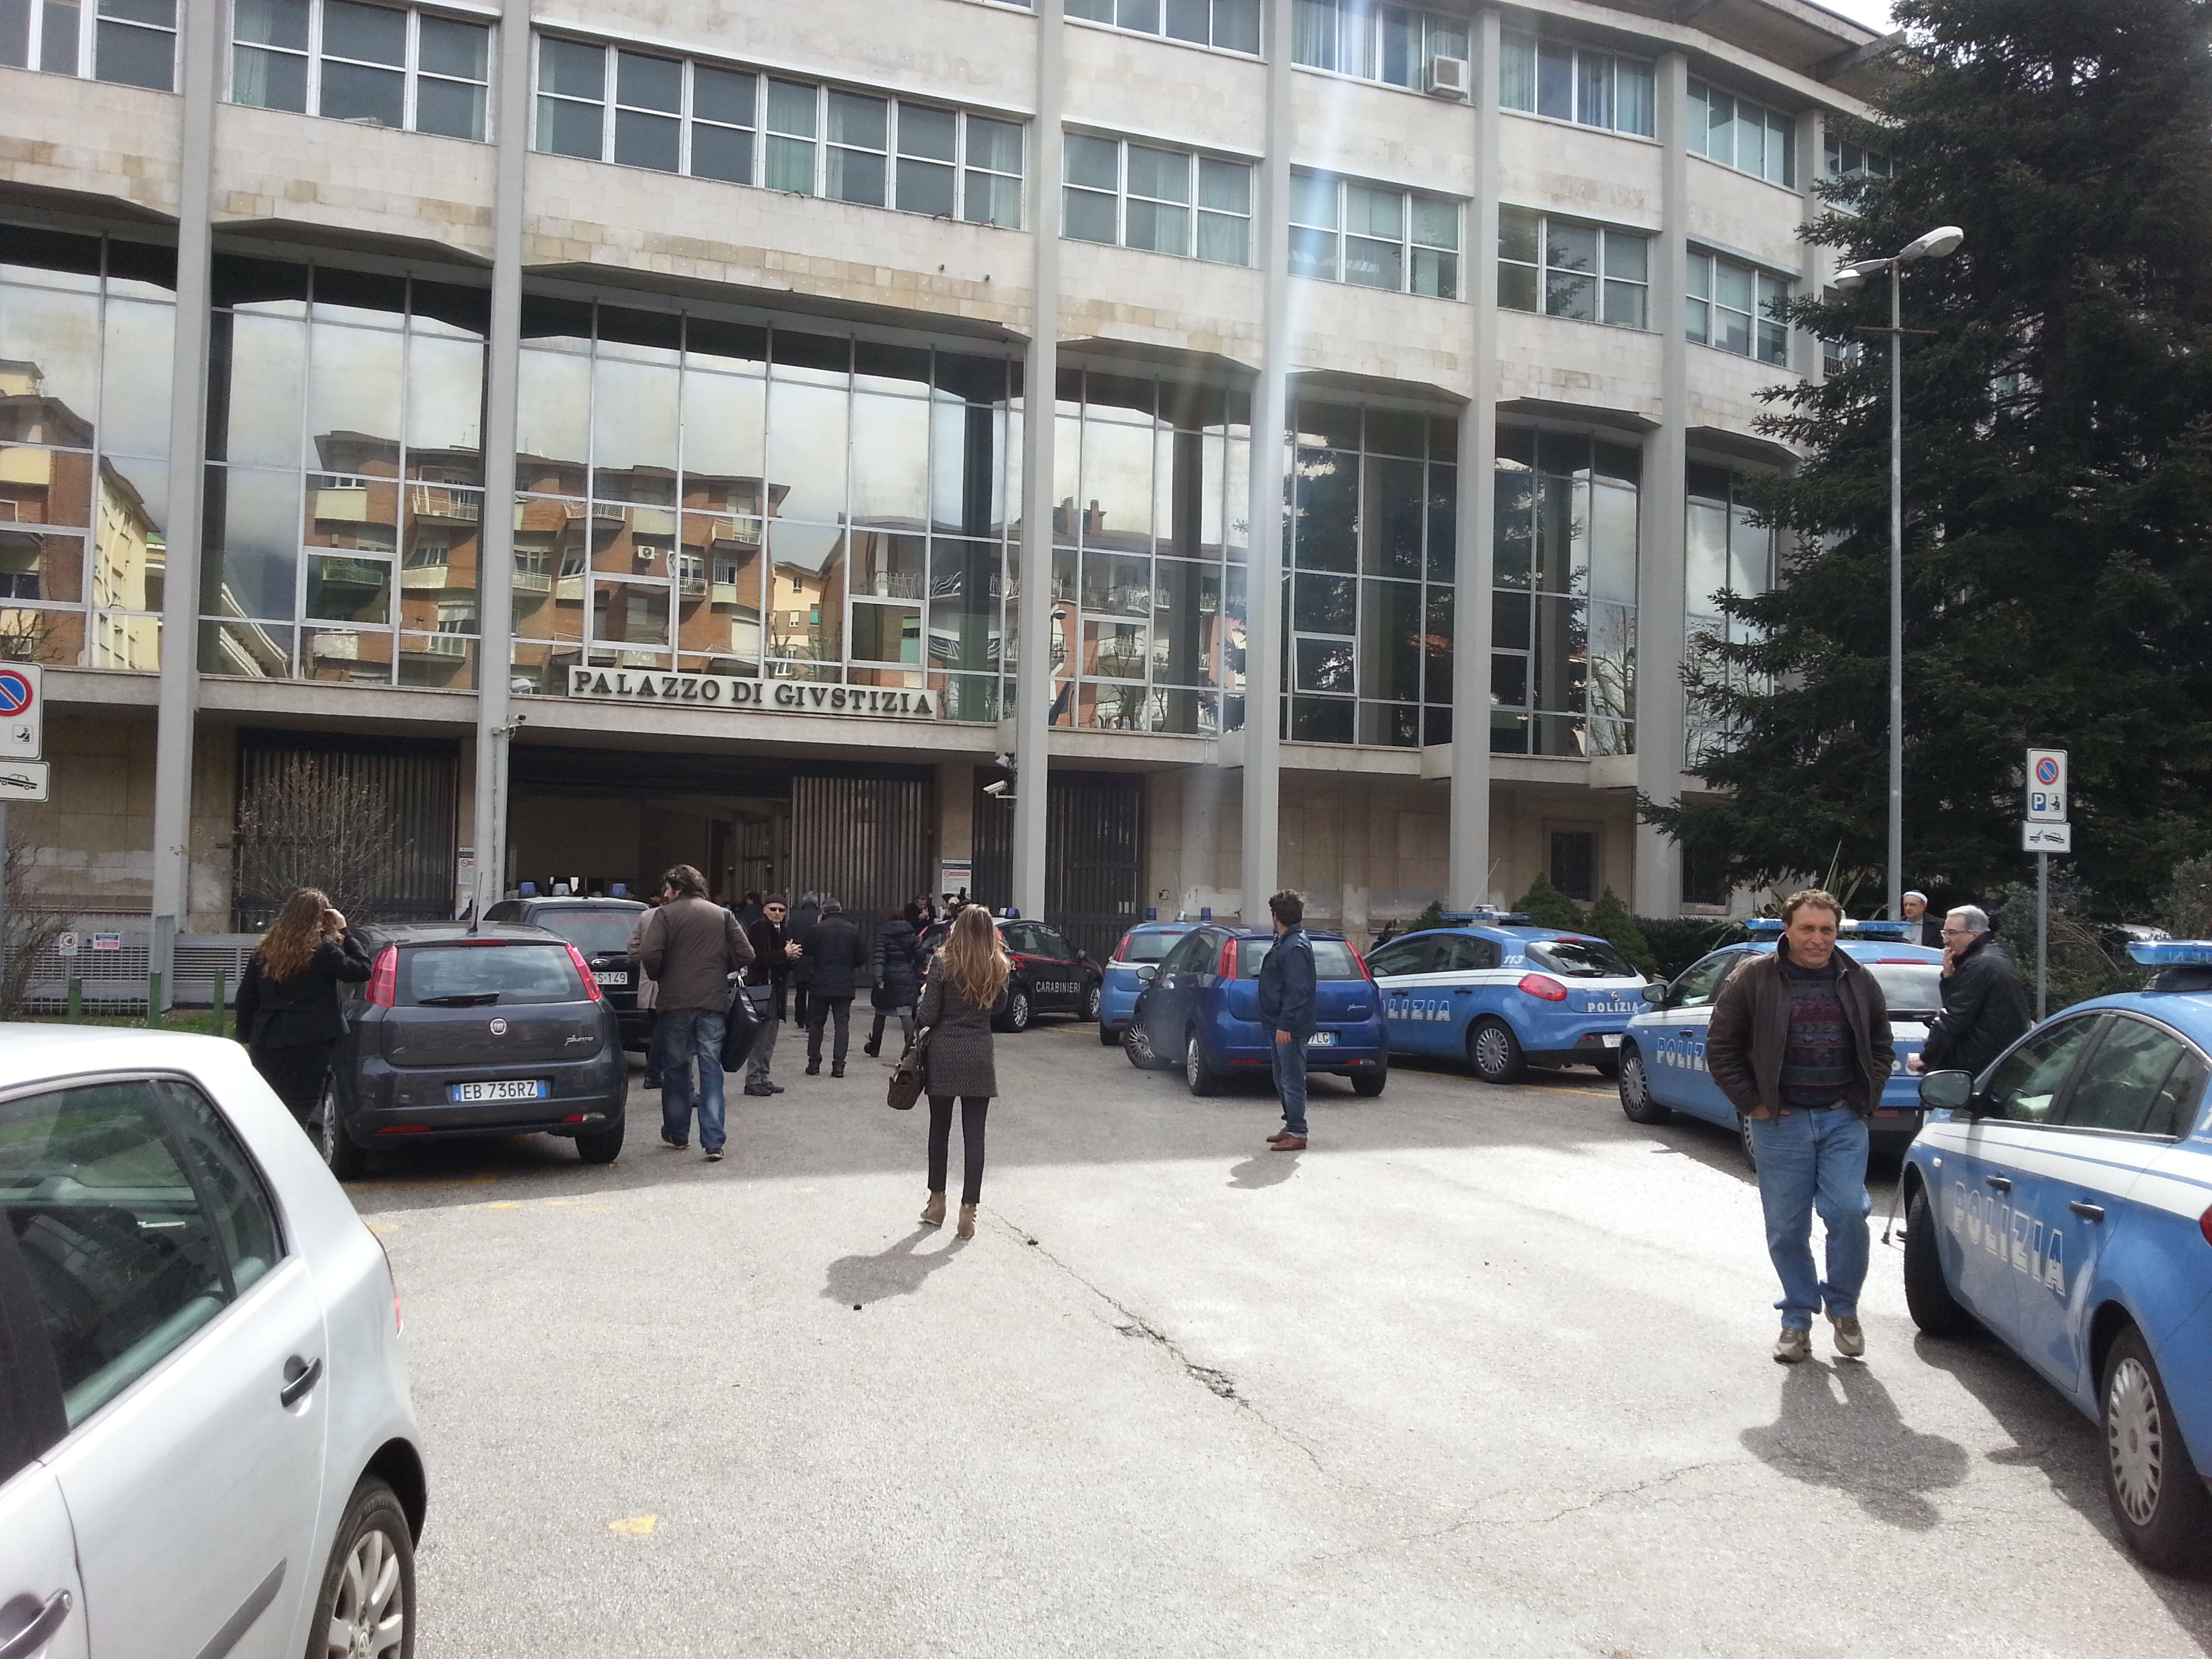  Bus in scarpata, al tribunale di Avellino parte oggi la causa civile per risarcimenti